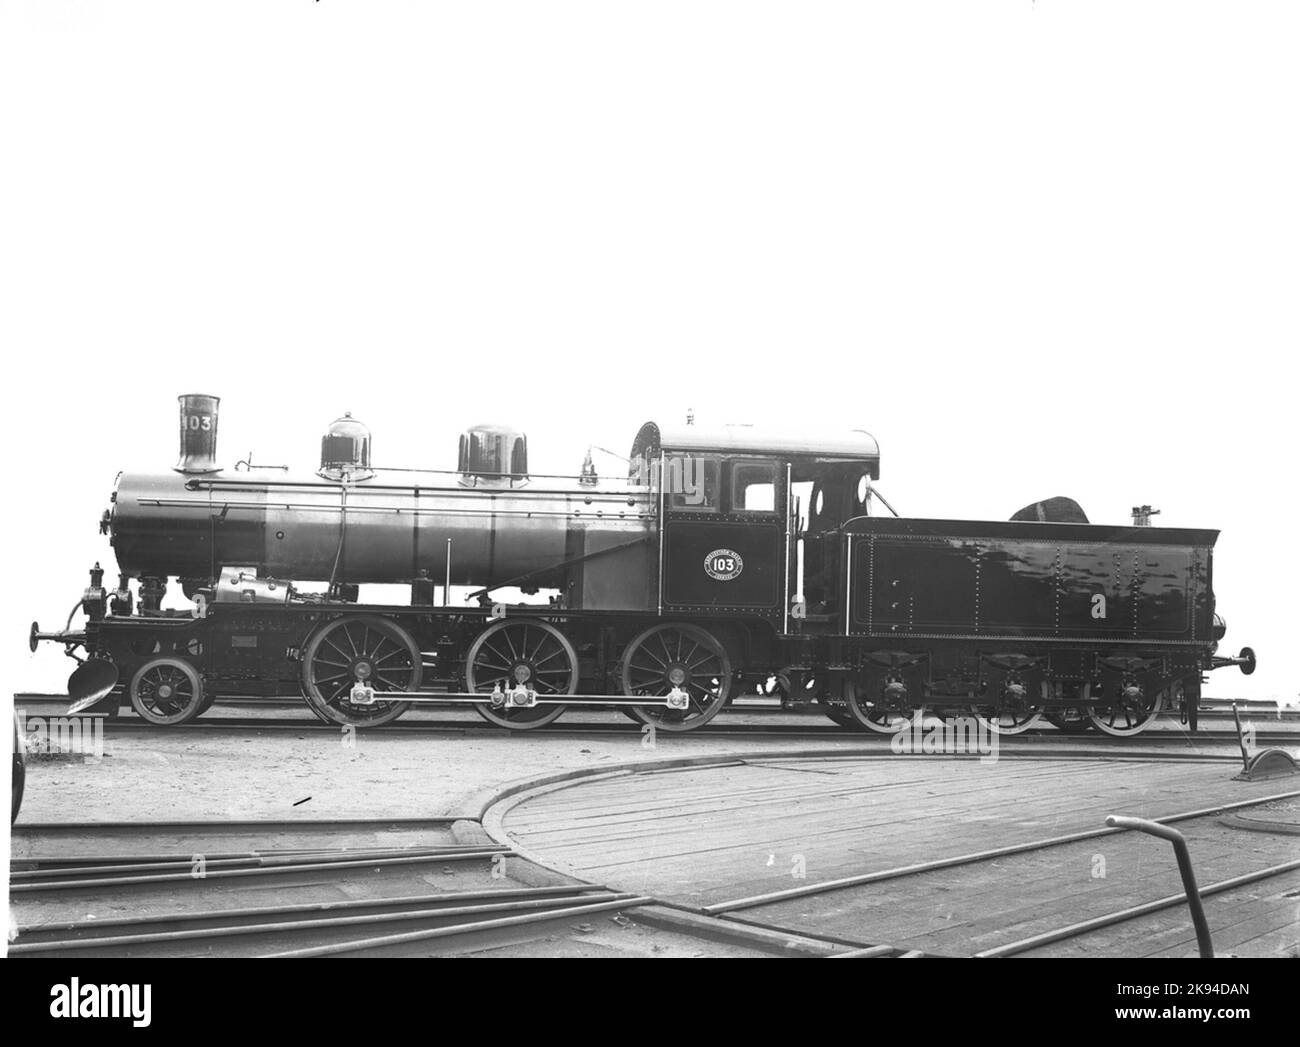 SNE L1 103. Foto de entrega. La locomotora fue fabricada por Motala Workshop y tenía la velocidad más alta de 70 km por hora. Vendido en 1940 a los ferrocarriles estatales y obtuvo Littera SJ L11 en 1573. Raspado en 1969 en Vislanda. Foto de stock